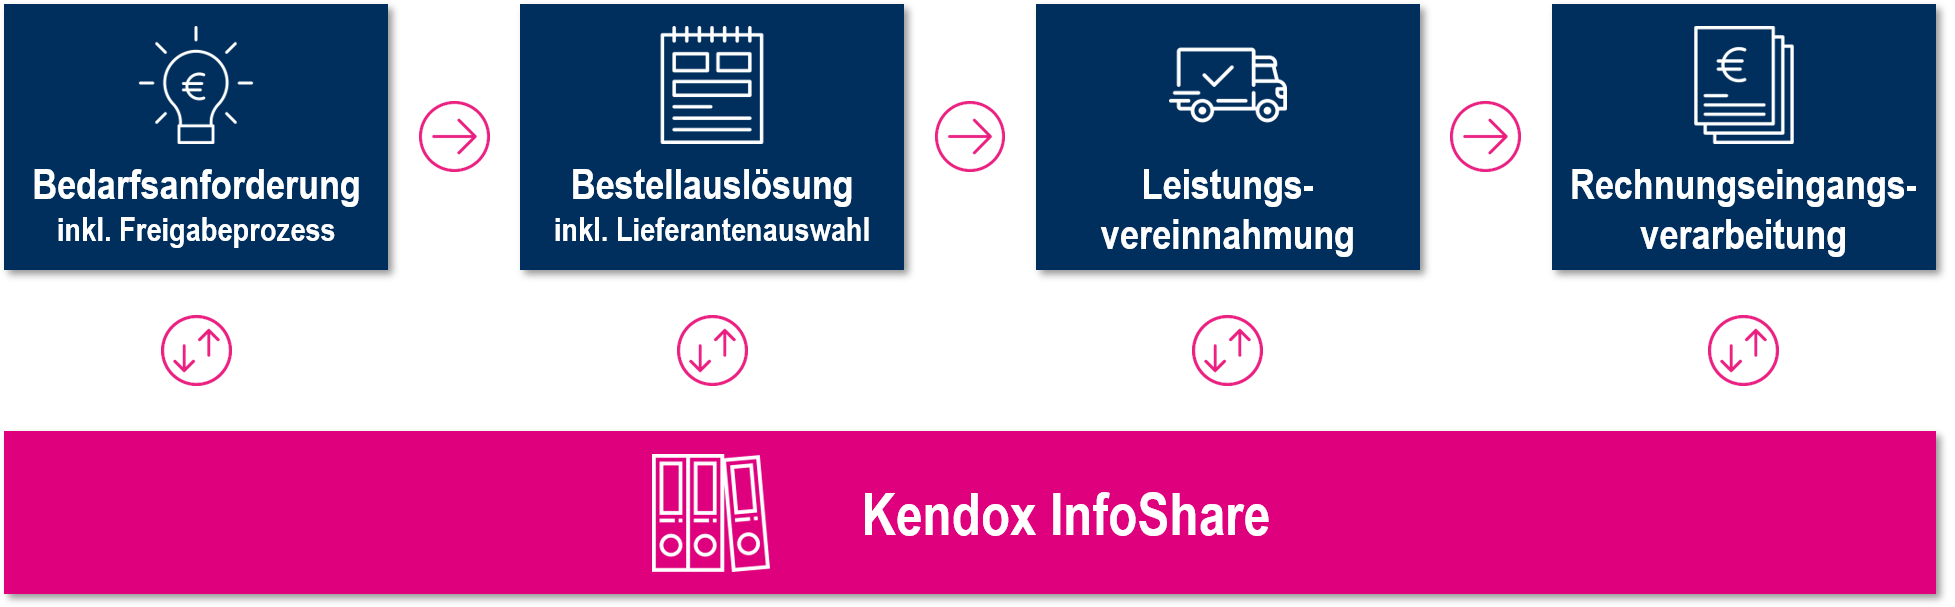 Der Purchase-to-Pay Prozess mit Kendox InfoShare